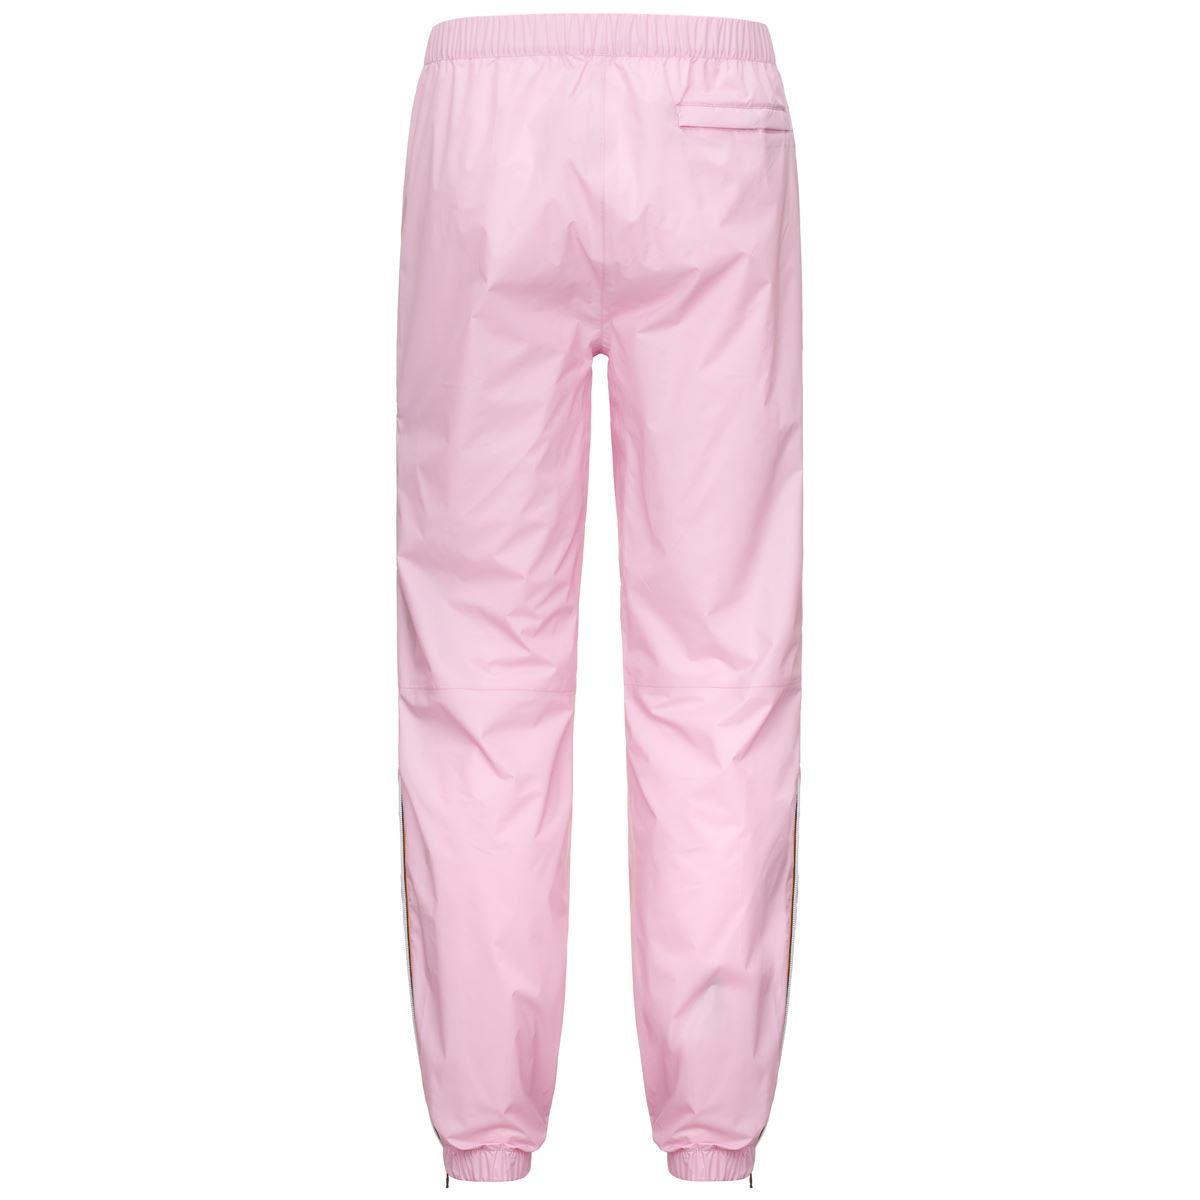 Edgard - Kids Waterproof Pants in Pink